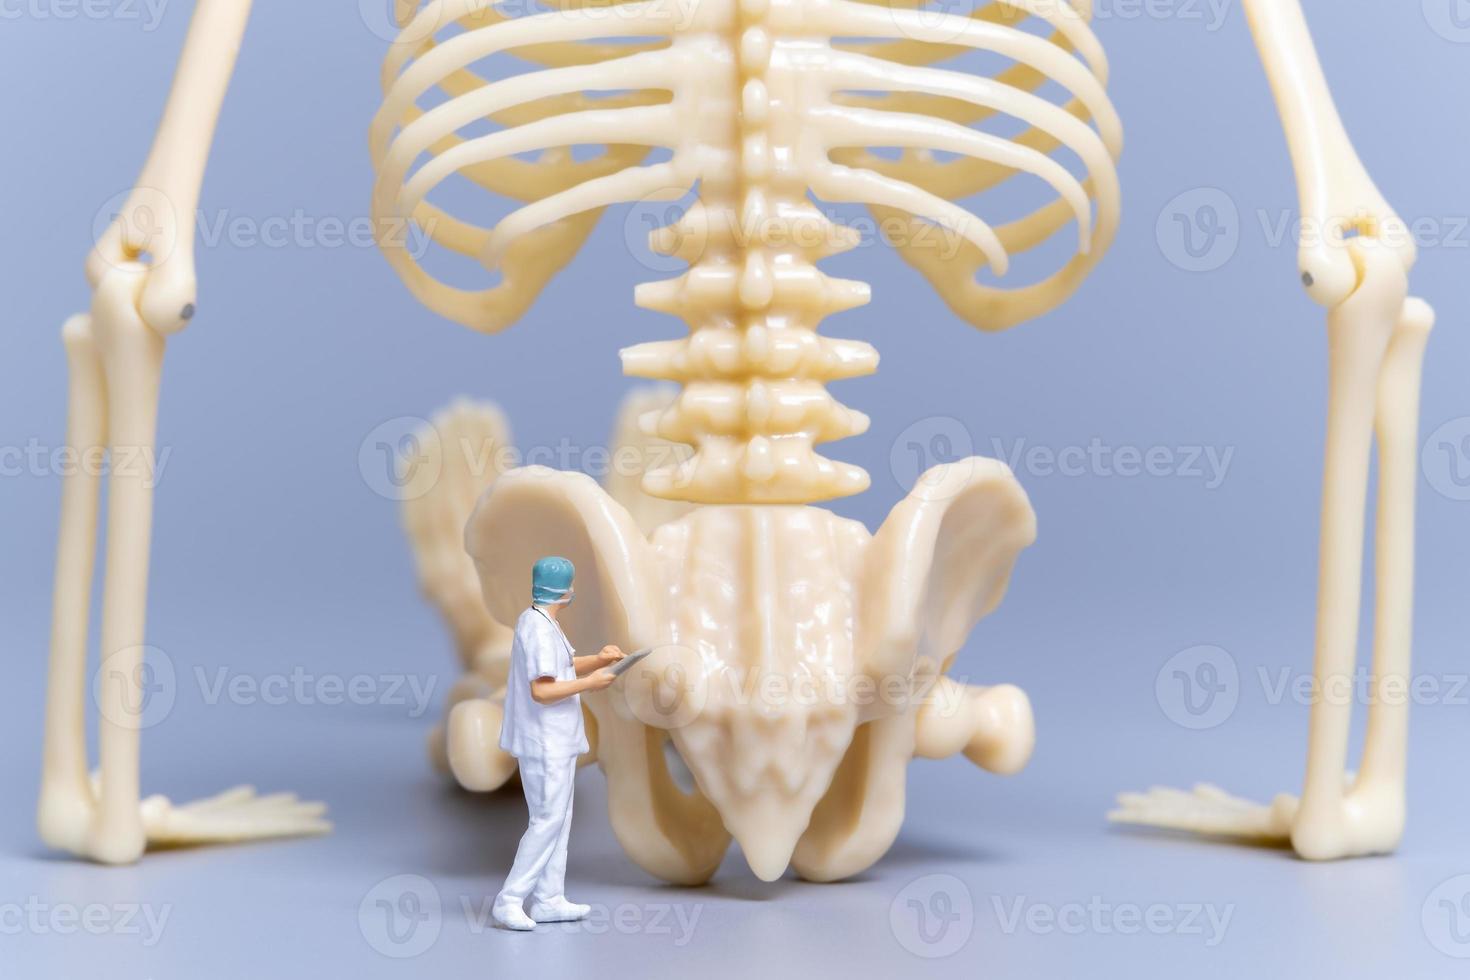 miniatuur mensendokter met een gigantisch menselijk bot op een grijze achtergrond foto